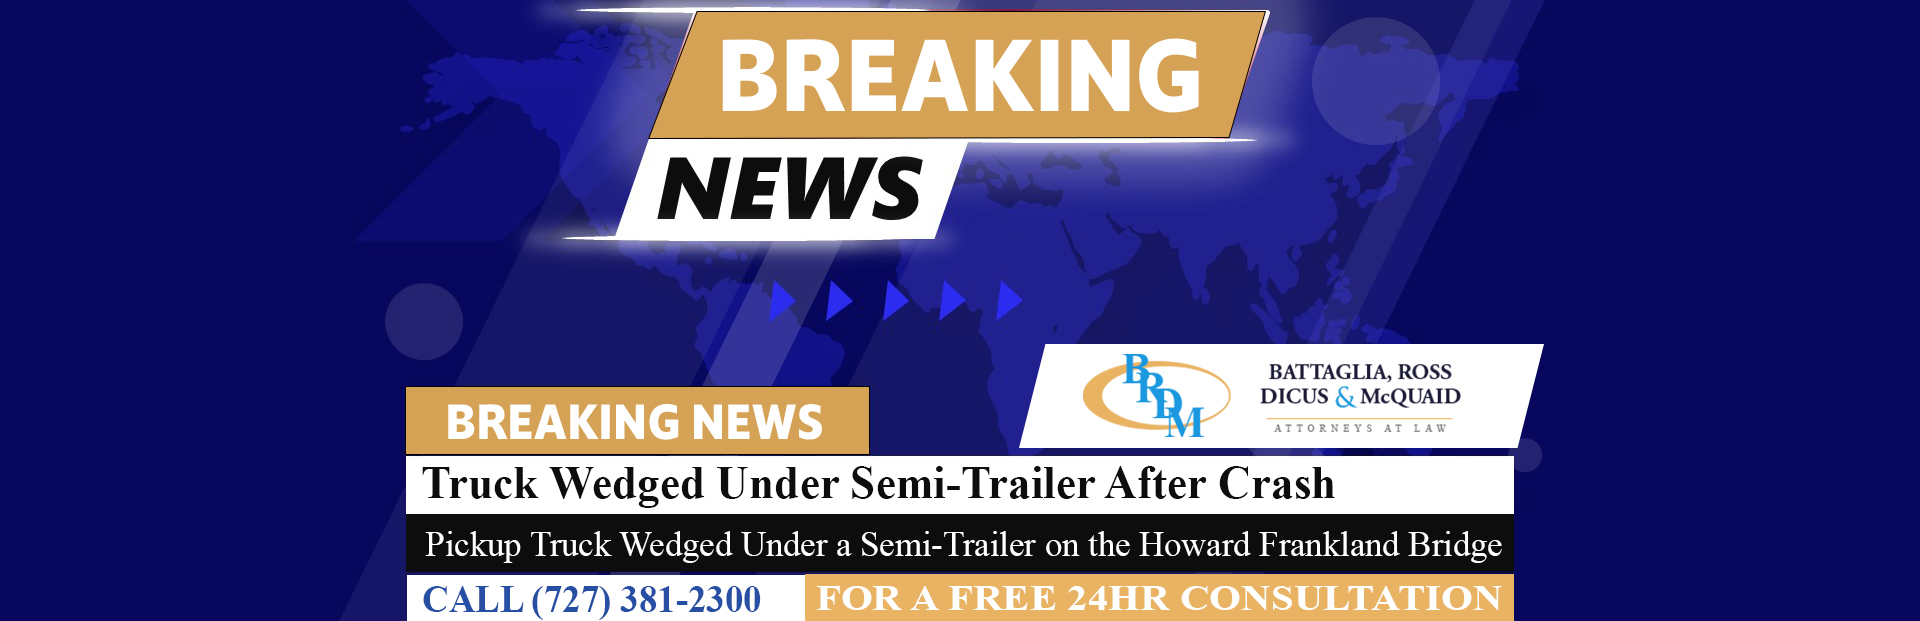 [12-12-22] Truck Wedged Under Semi-Trailer After Crash on Howard Frankland Bridge